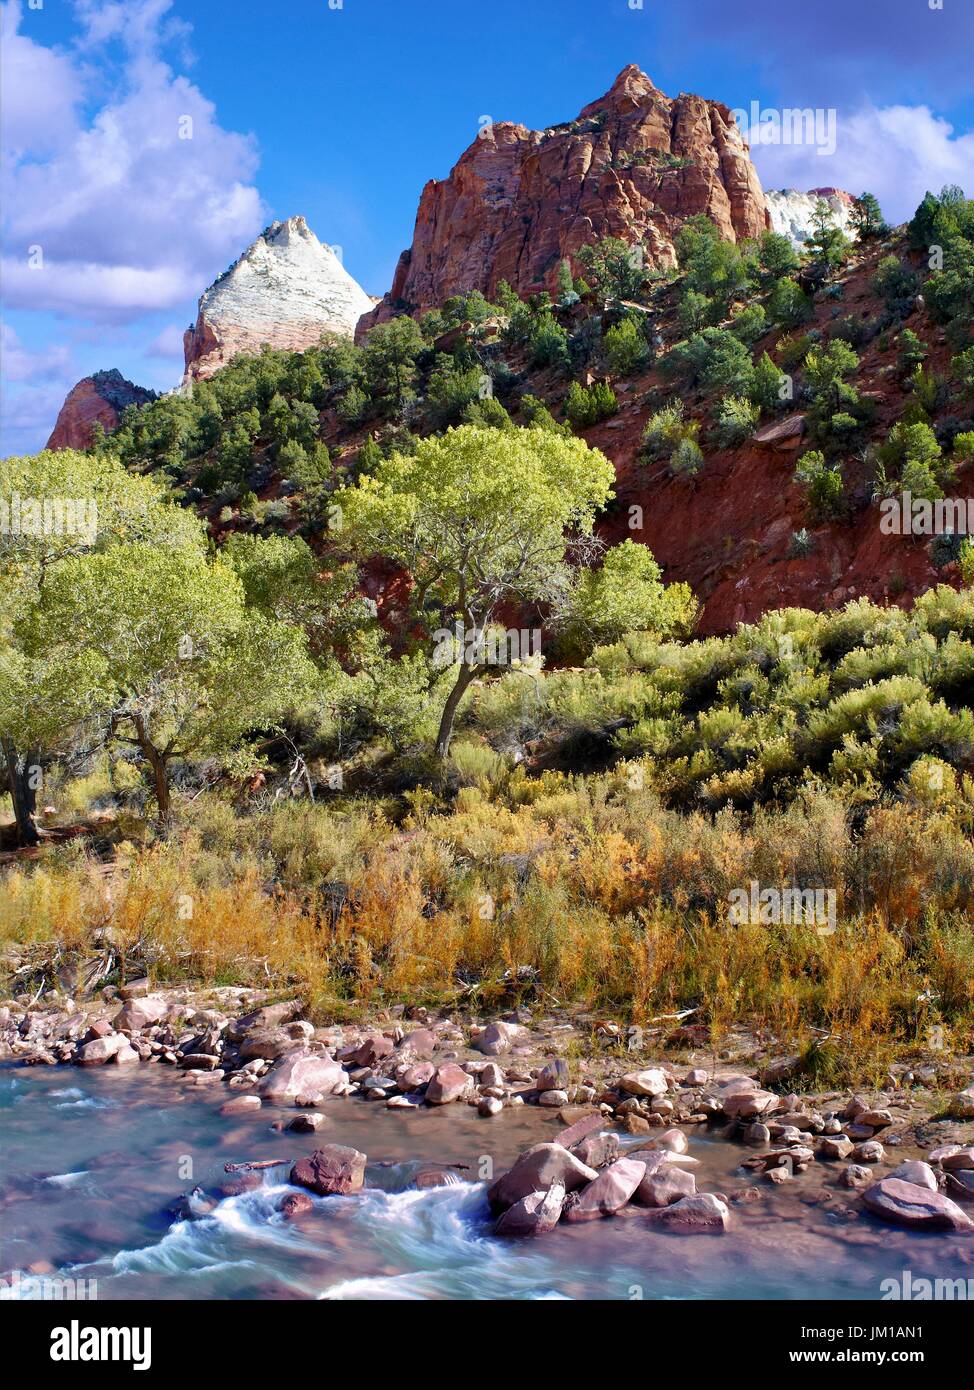 Une vue sur le paysage montagneux de Zion National Park, Utah, USA au cours de la saison d'automne Banque D'Images